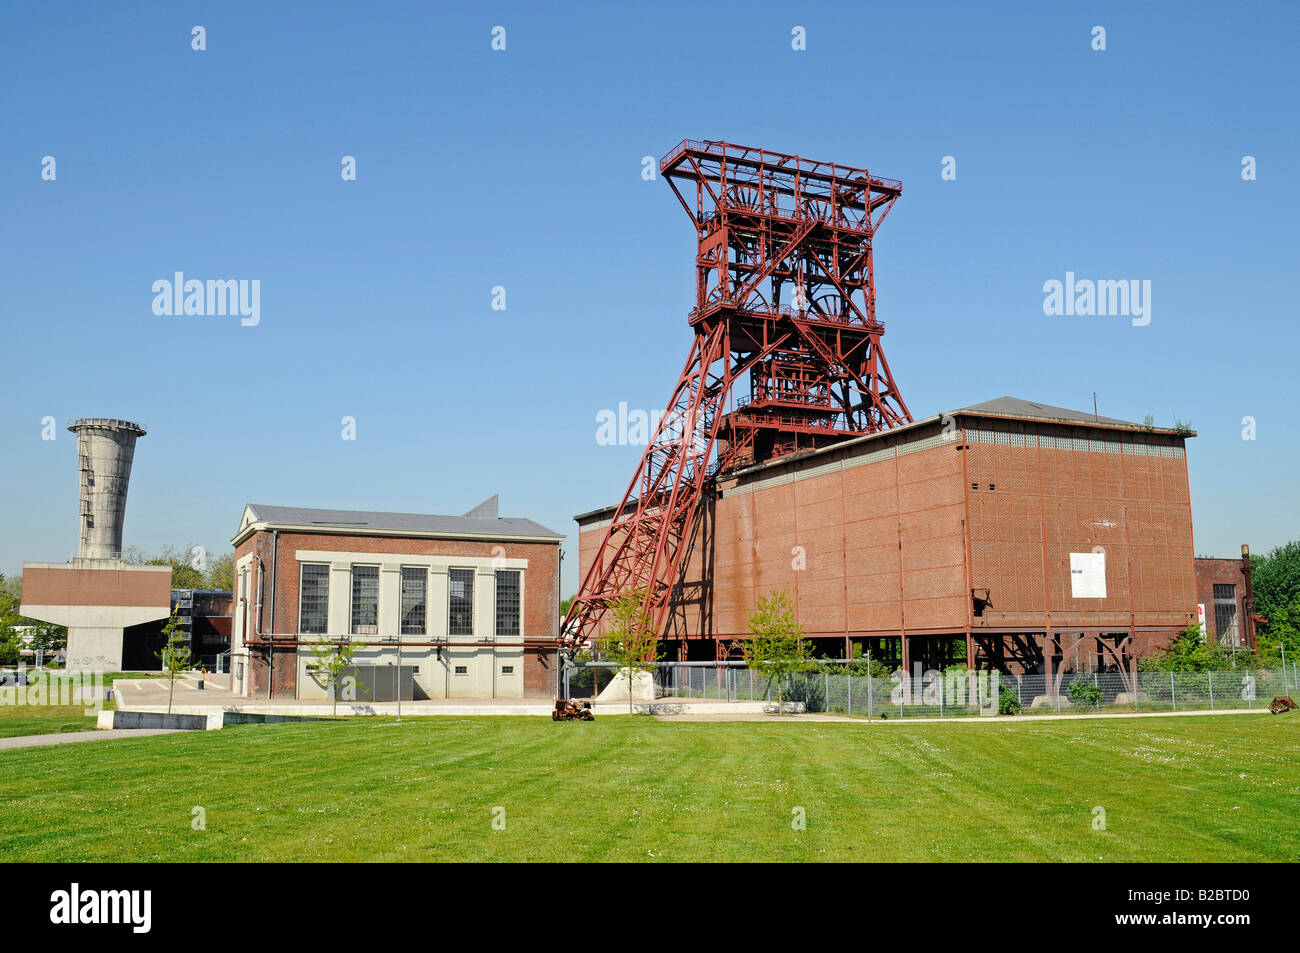 Bergwerk Consolidation, Zeche, Industriedenkmal, gewundenen Turm, Gelsenkirchen, Nordrhein-Westfalen, Deutschland, Europa Stockfoto